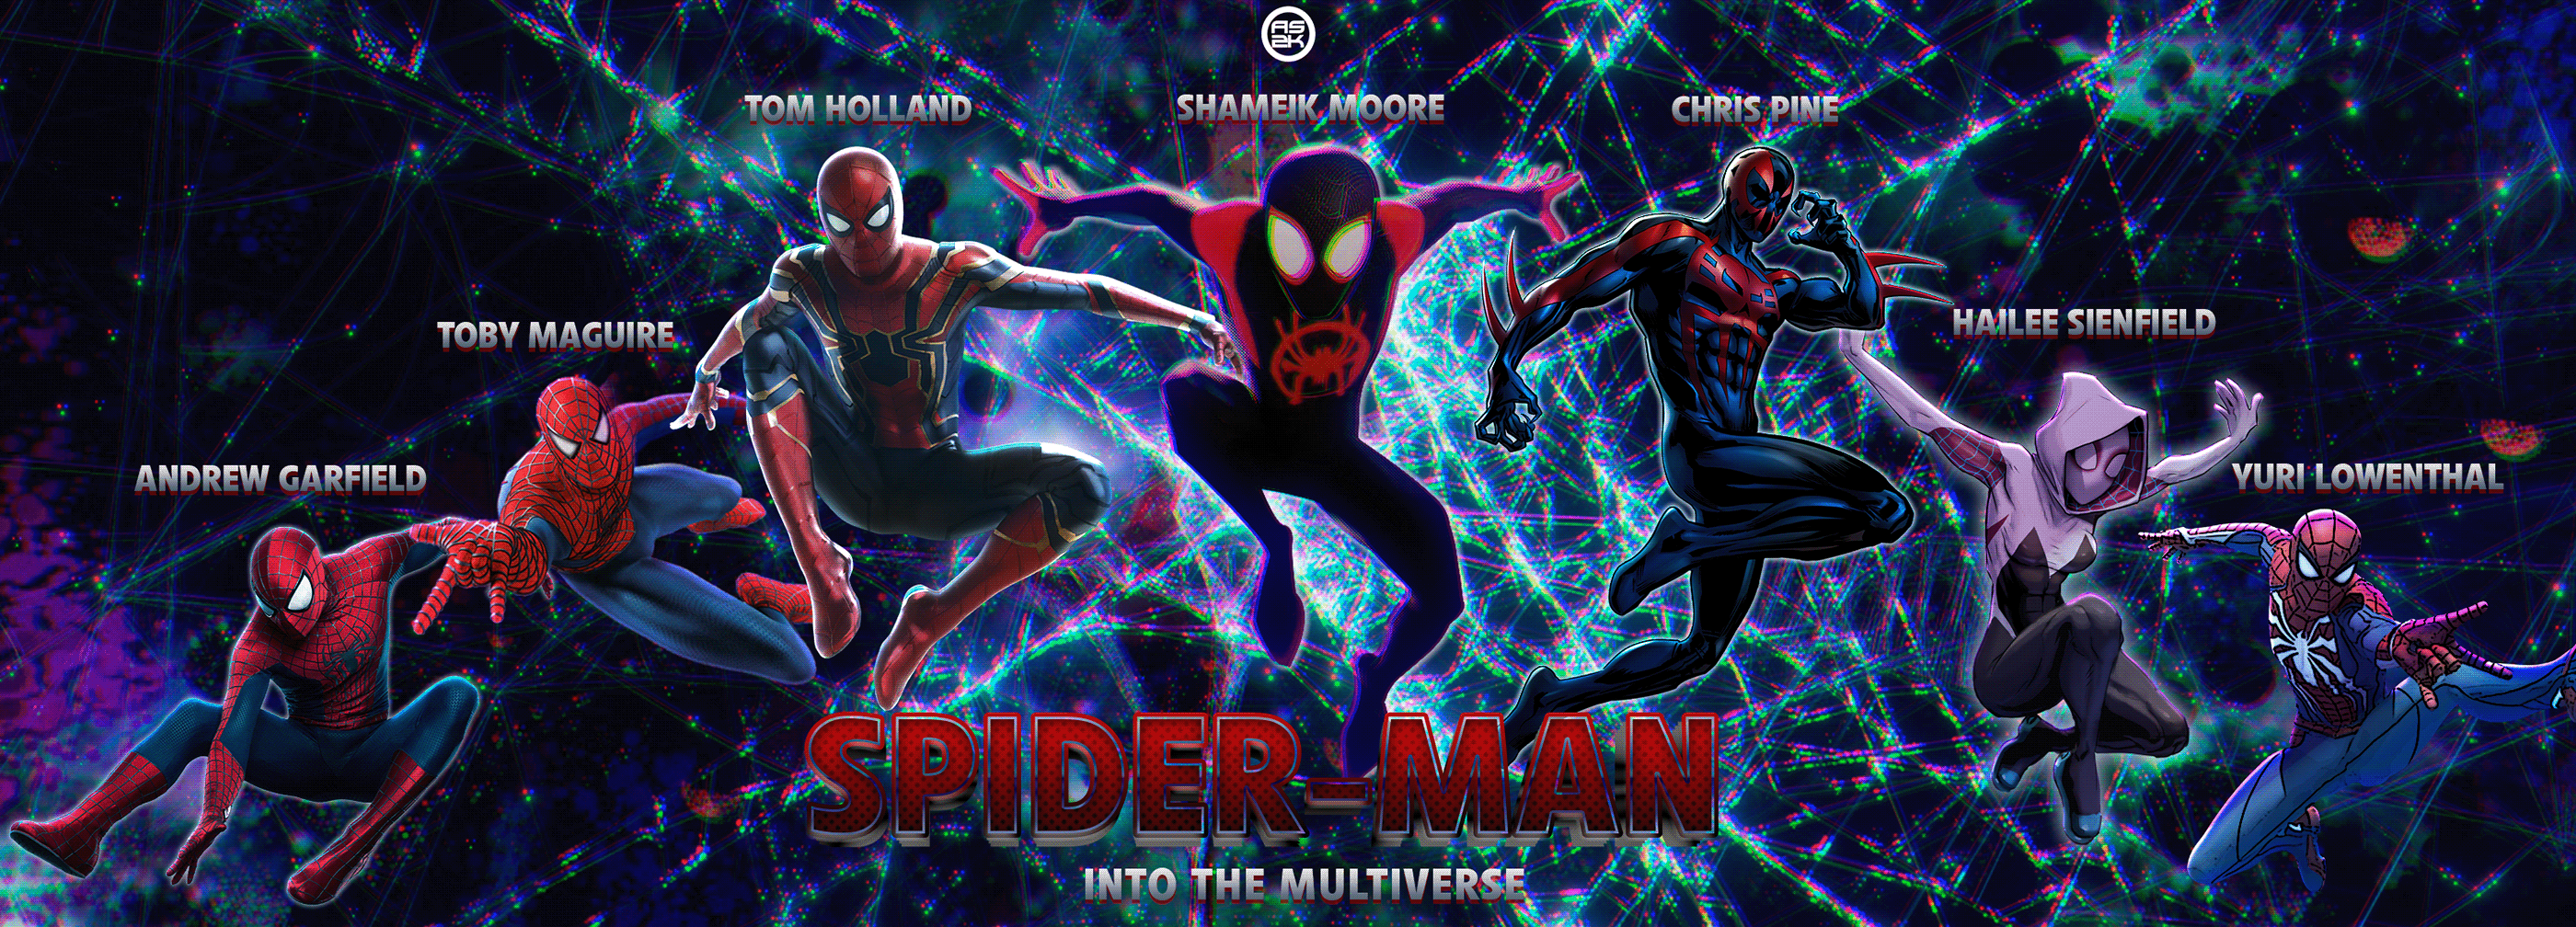 Skibidi multiverse 1. Человек паук Multiverse. Spider man Multiverse 2. Человек паук через вселенные лого. Spider man Multiverse 2 побег Майлса.